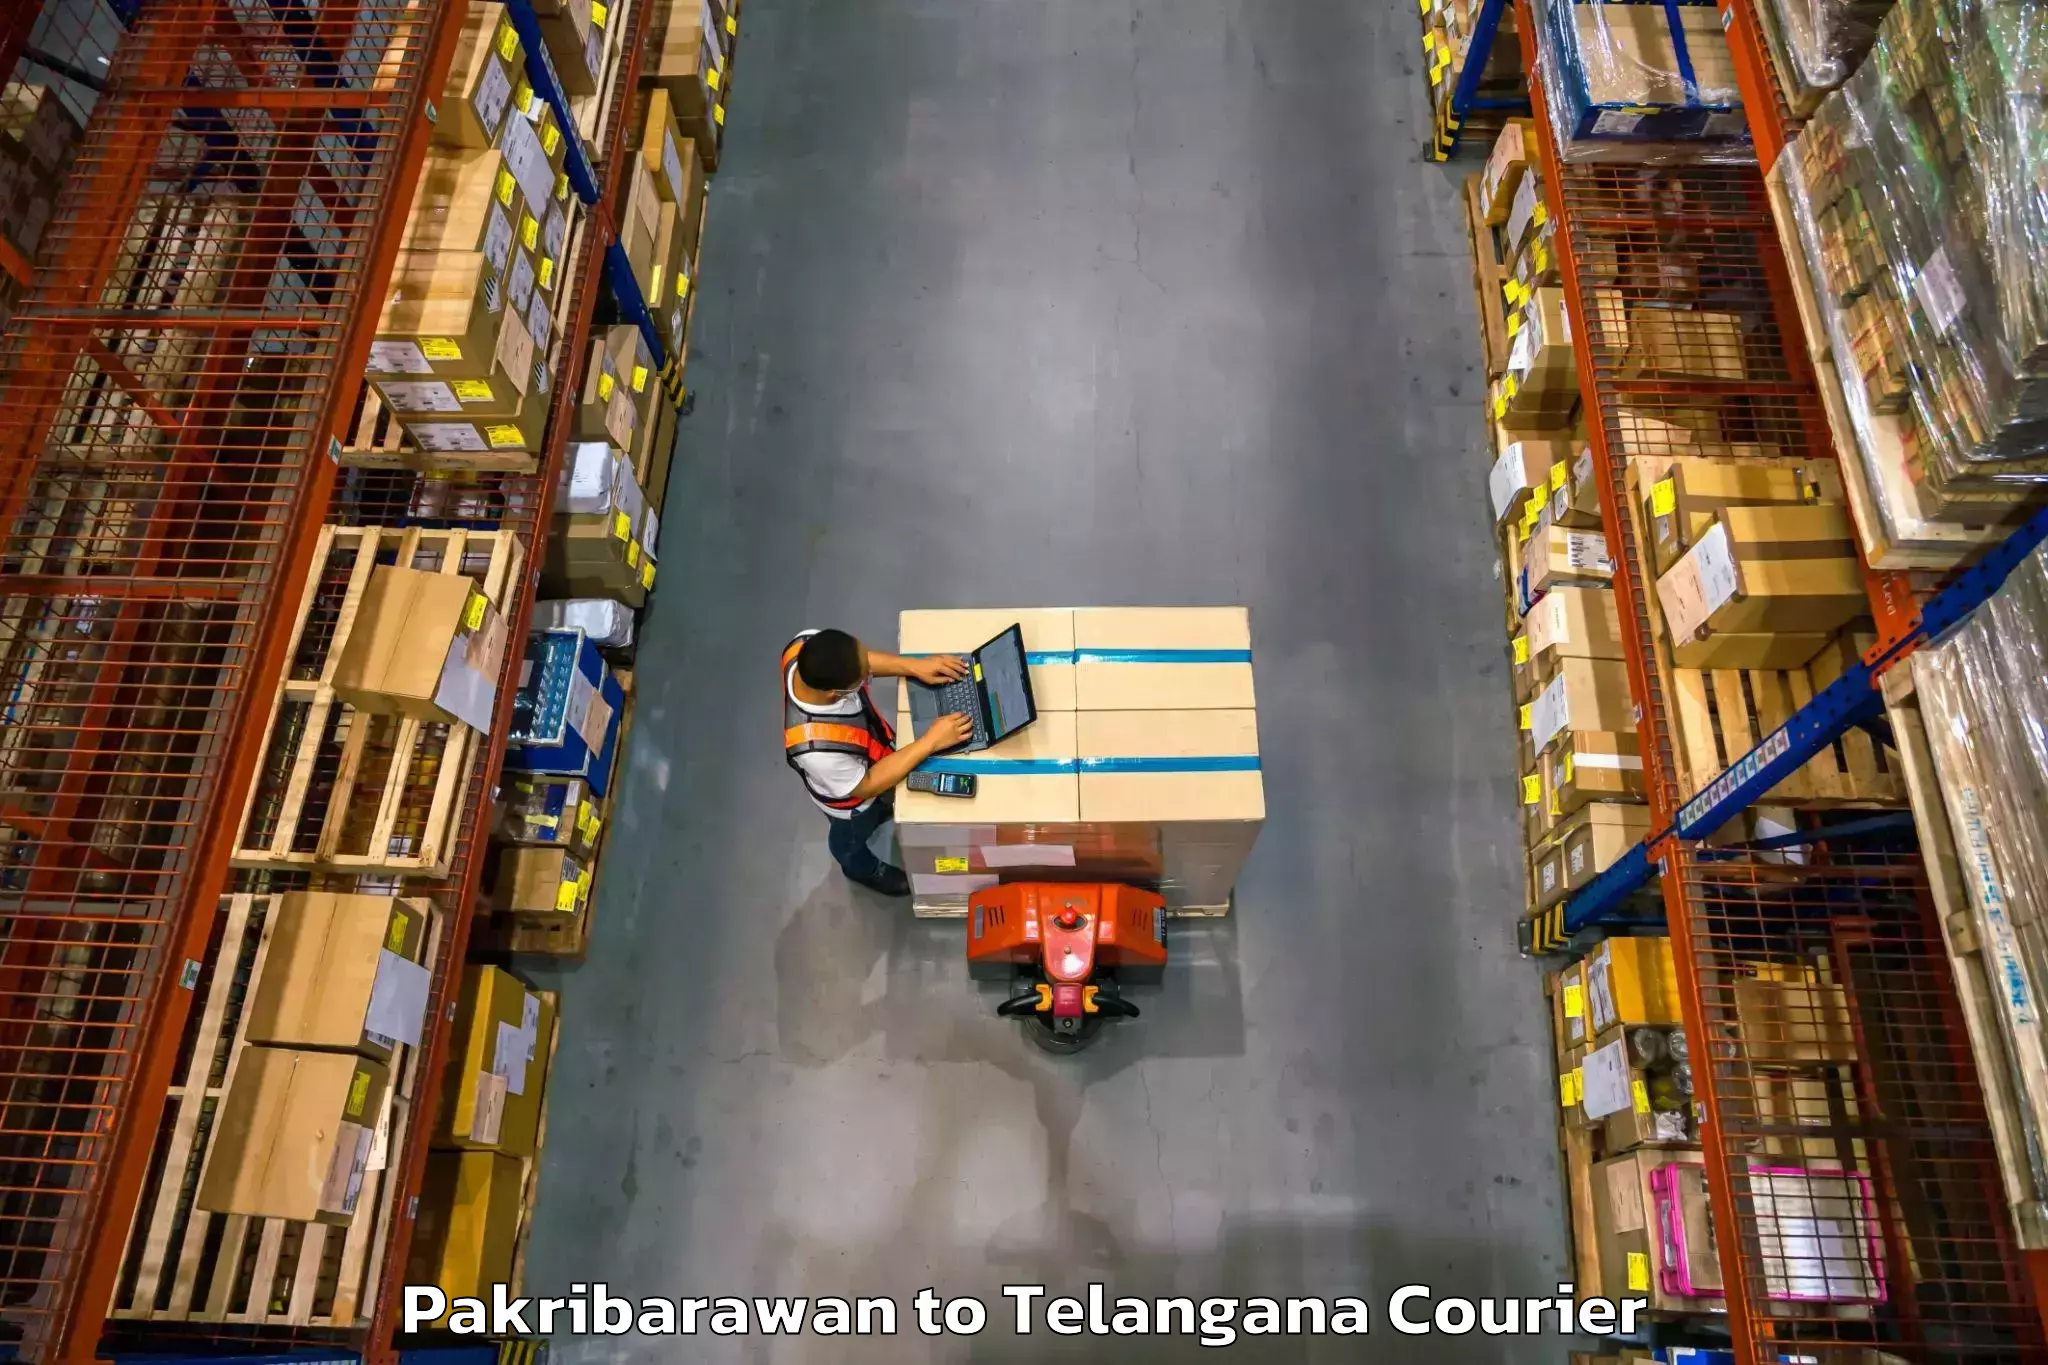 Express delivery solutions Pakribarawan to Telangana